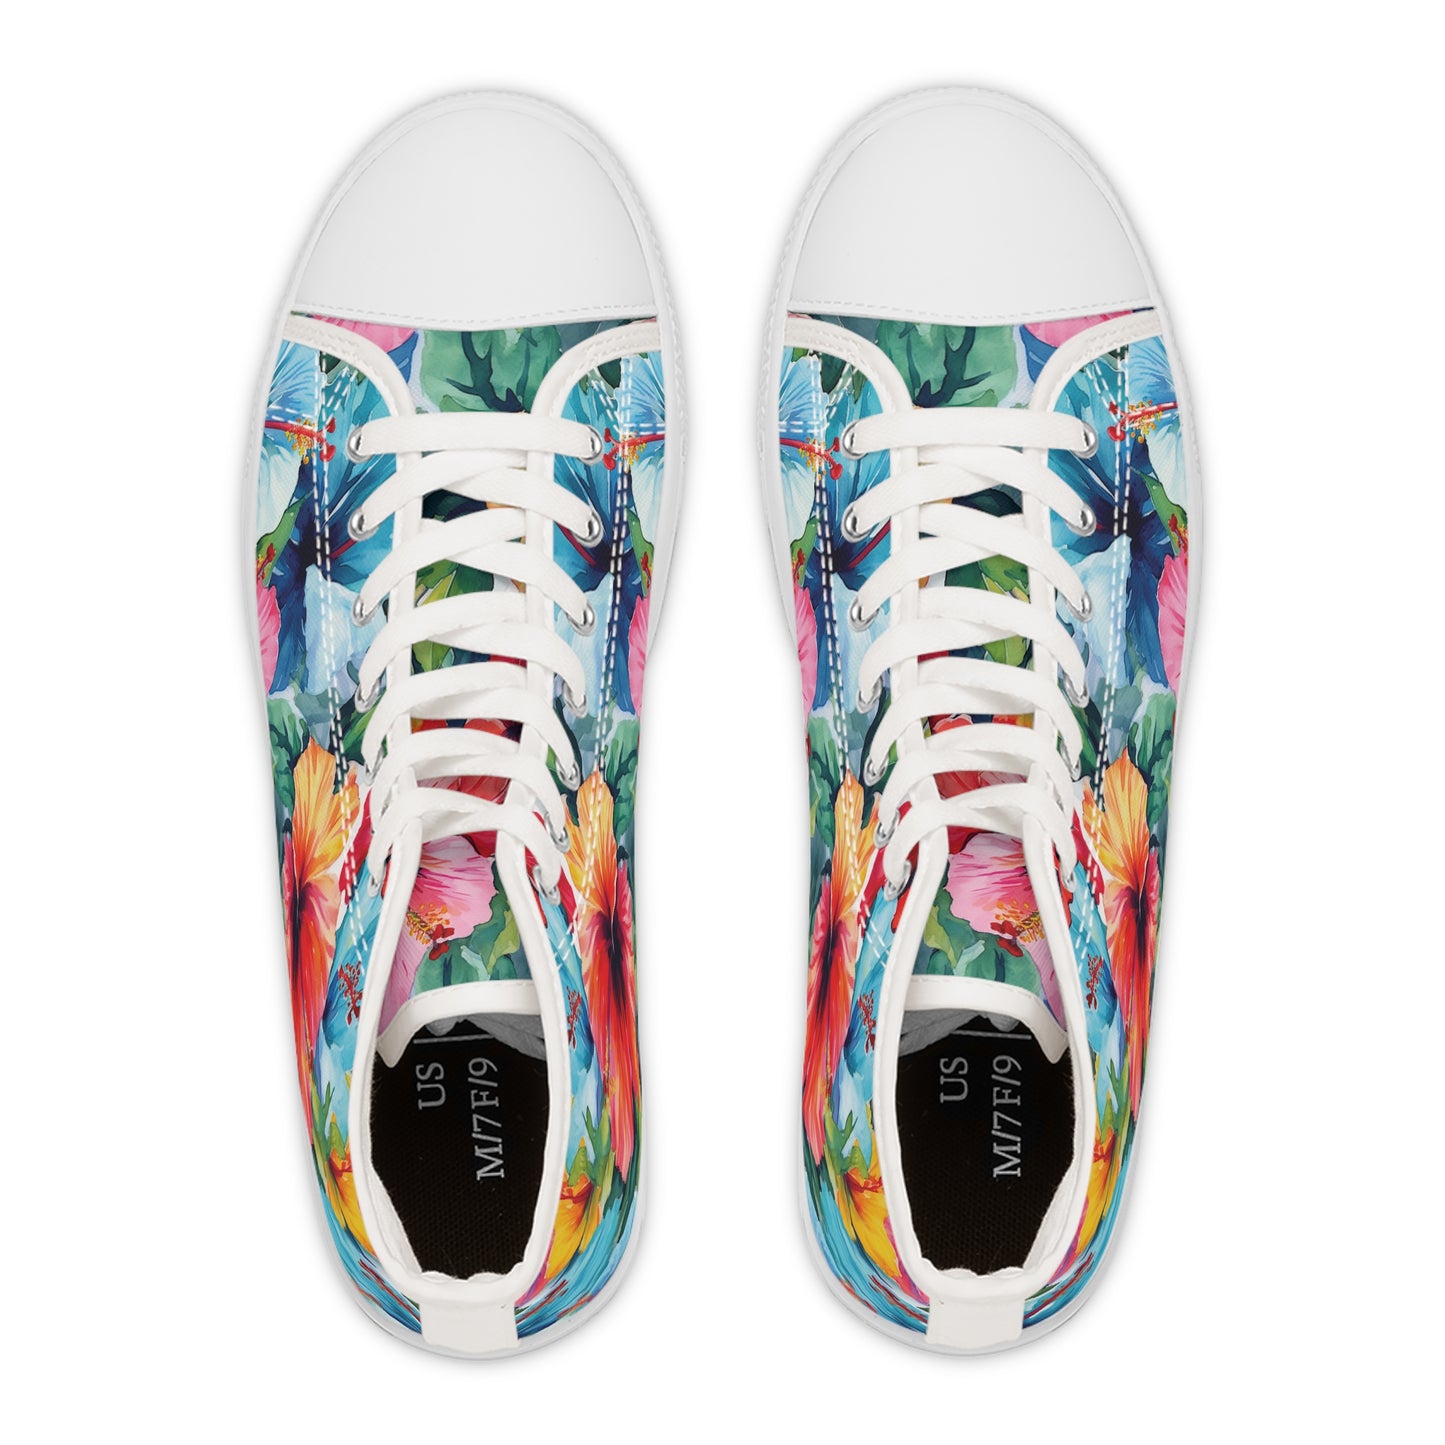 Watercolor Hibiscus (Light #4) Women's High-Top Sneakers (White) by Studio Ten Design